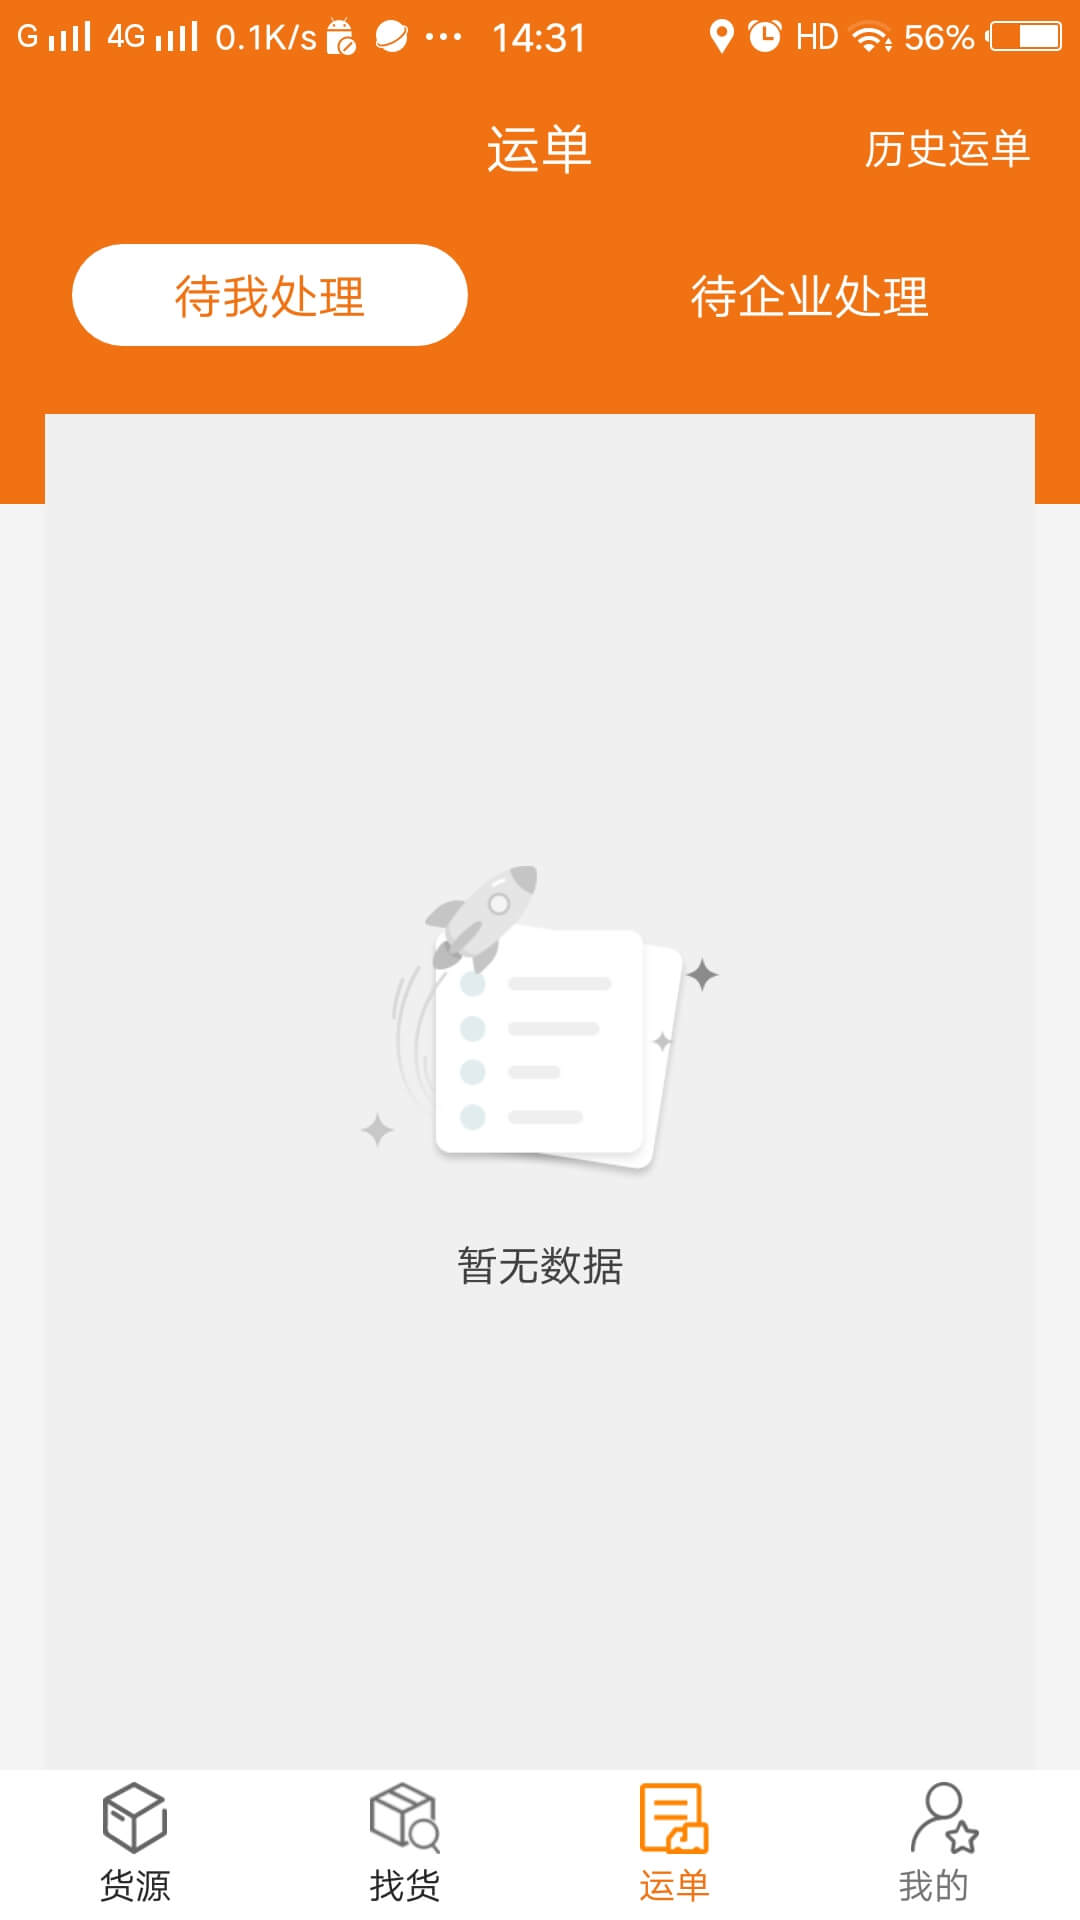 下载新货运江湖司机版_货运江湖司机版网址v2.2.99